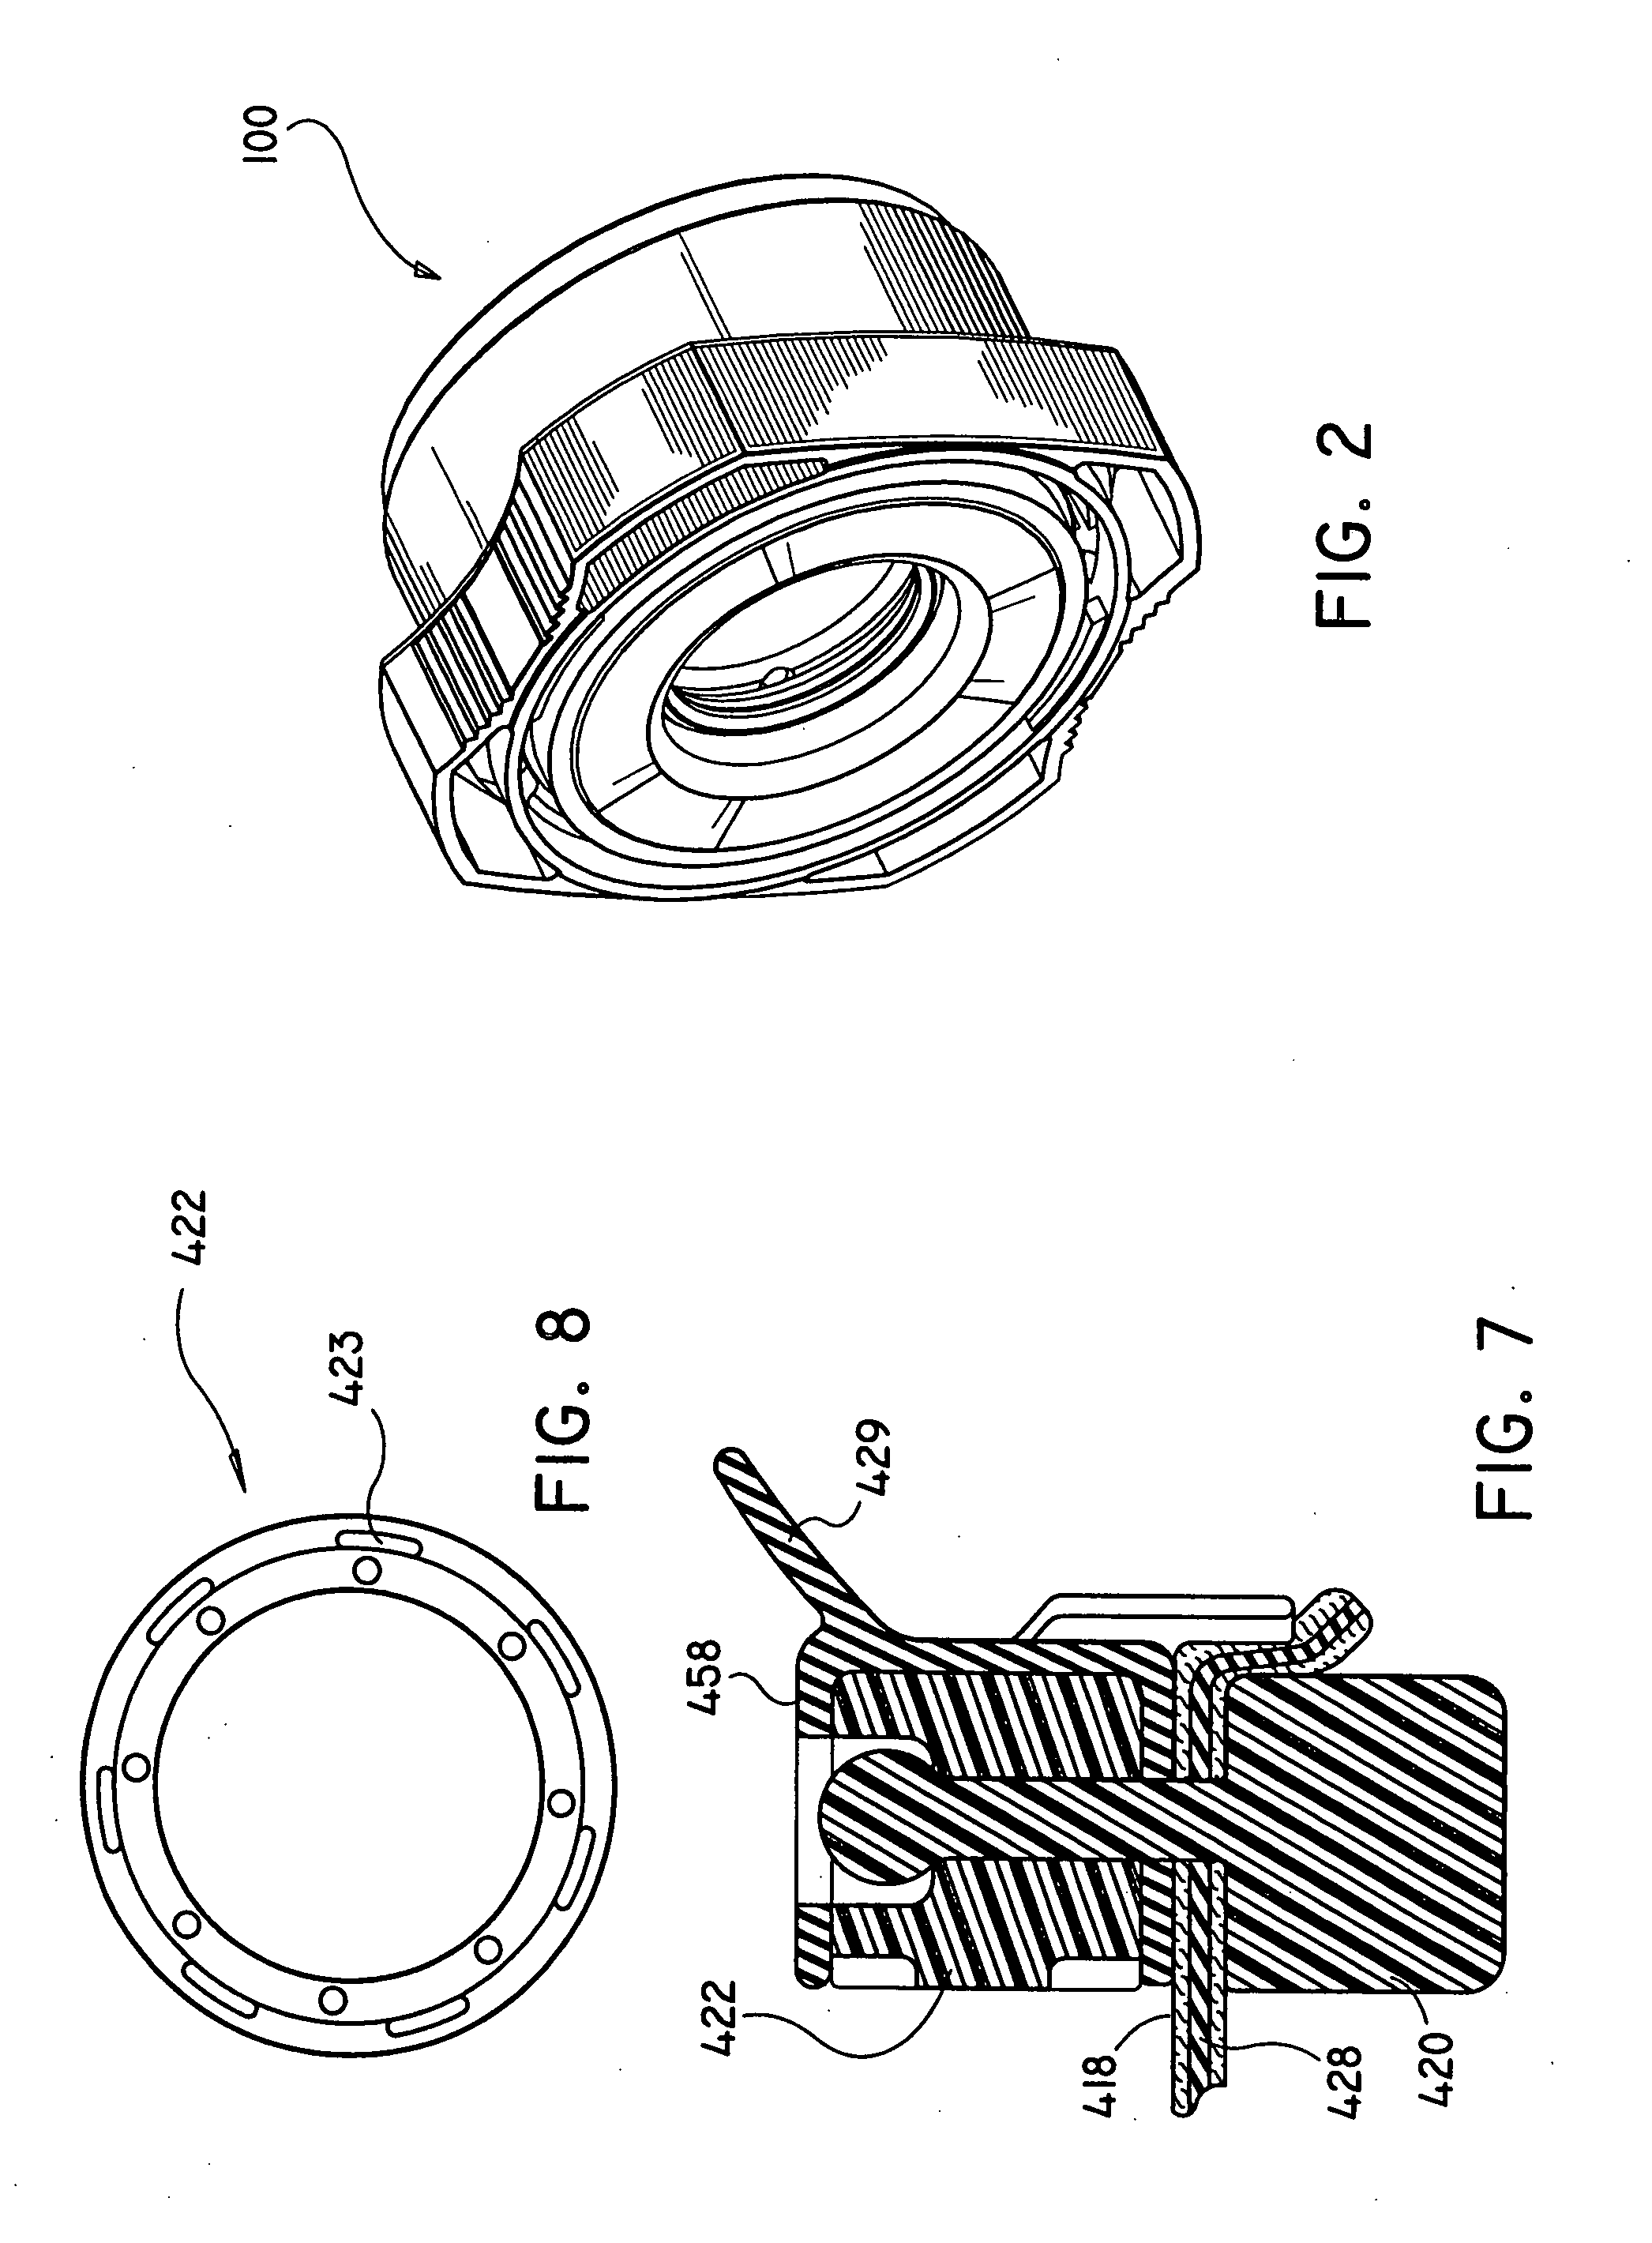 Trocar seal system